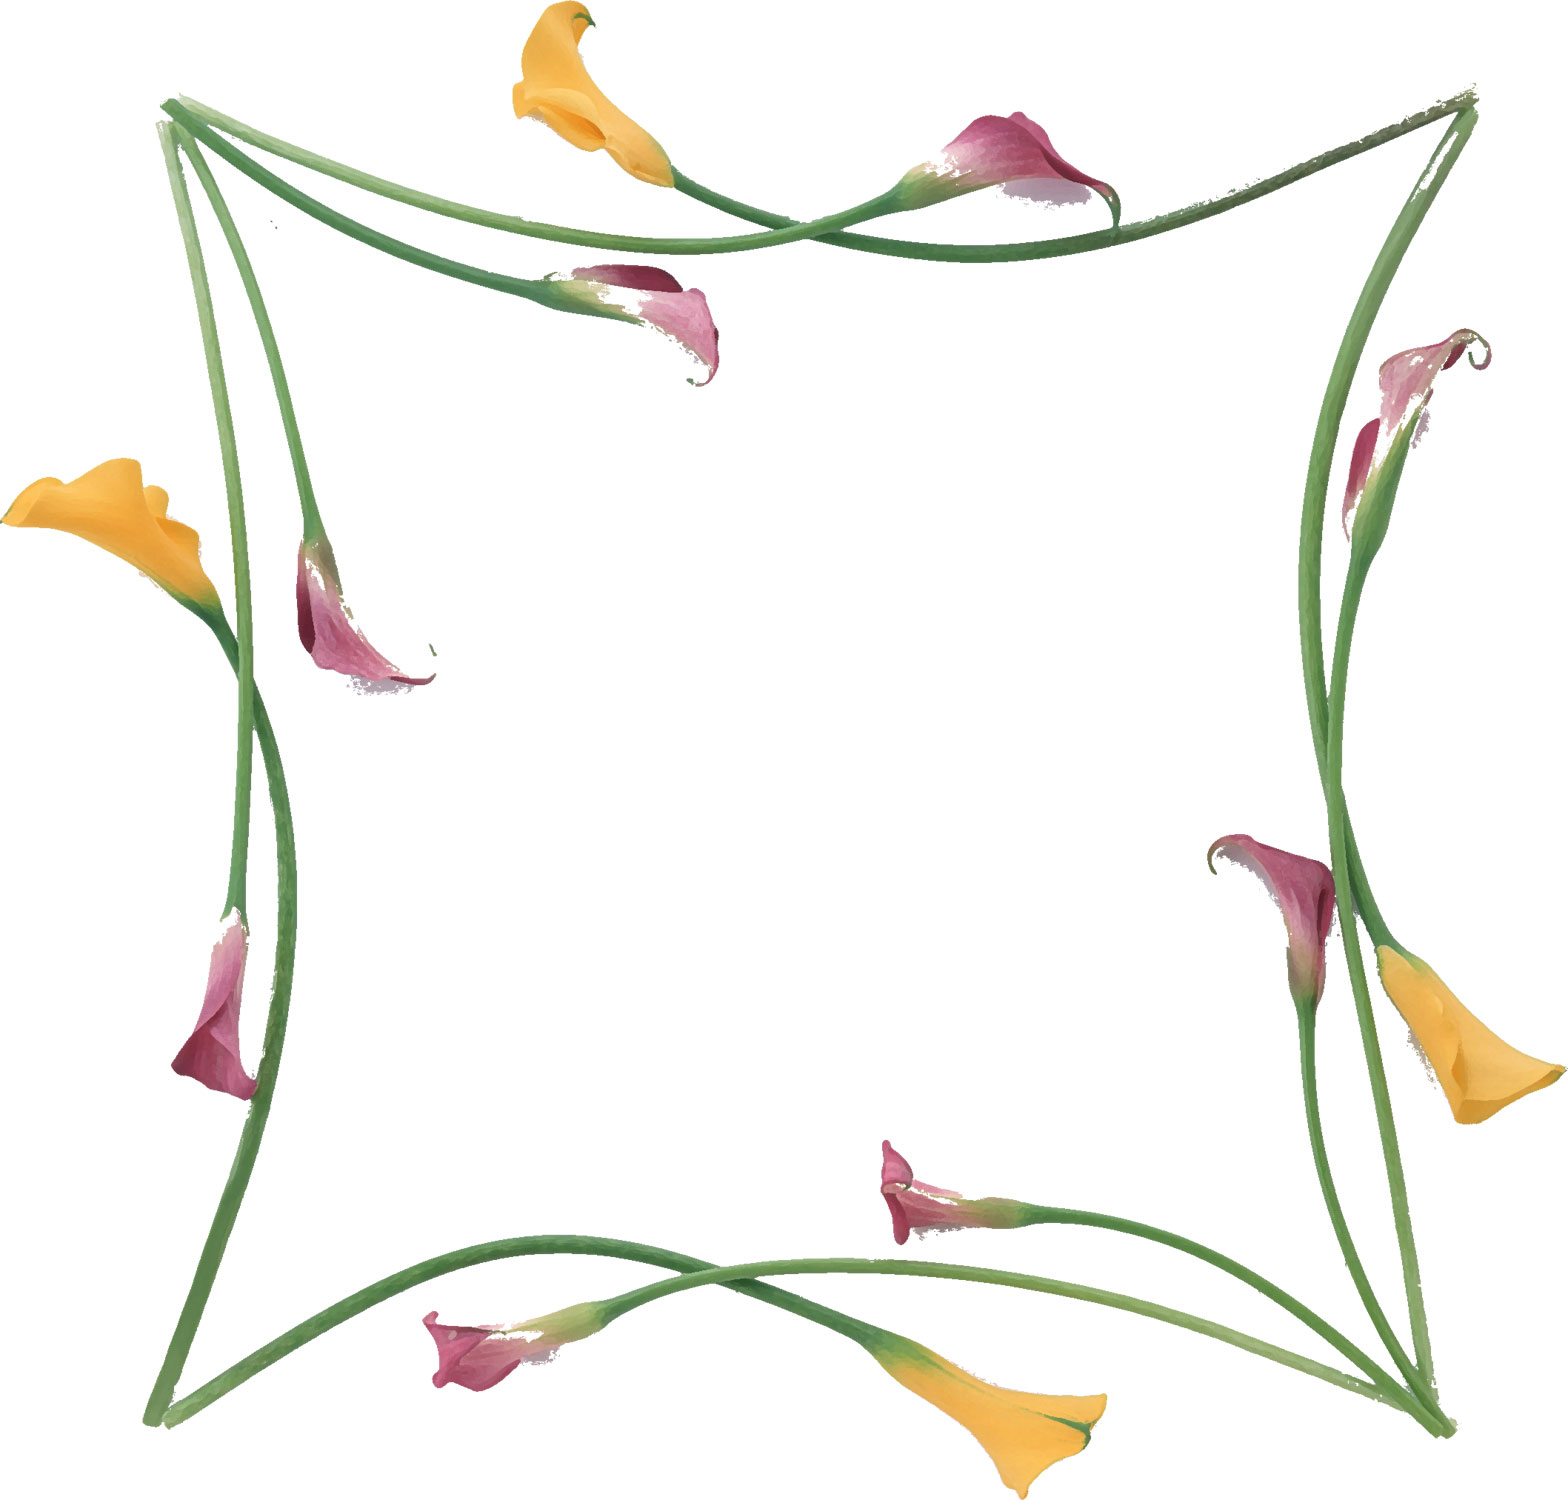 リアルな花のイラスト フリー素材 フレーム枠no 1338 カラーリリー 黄紫